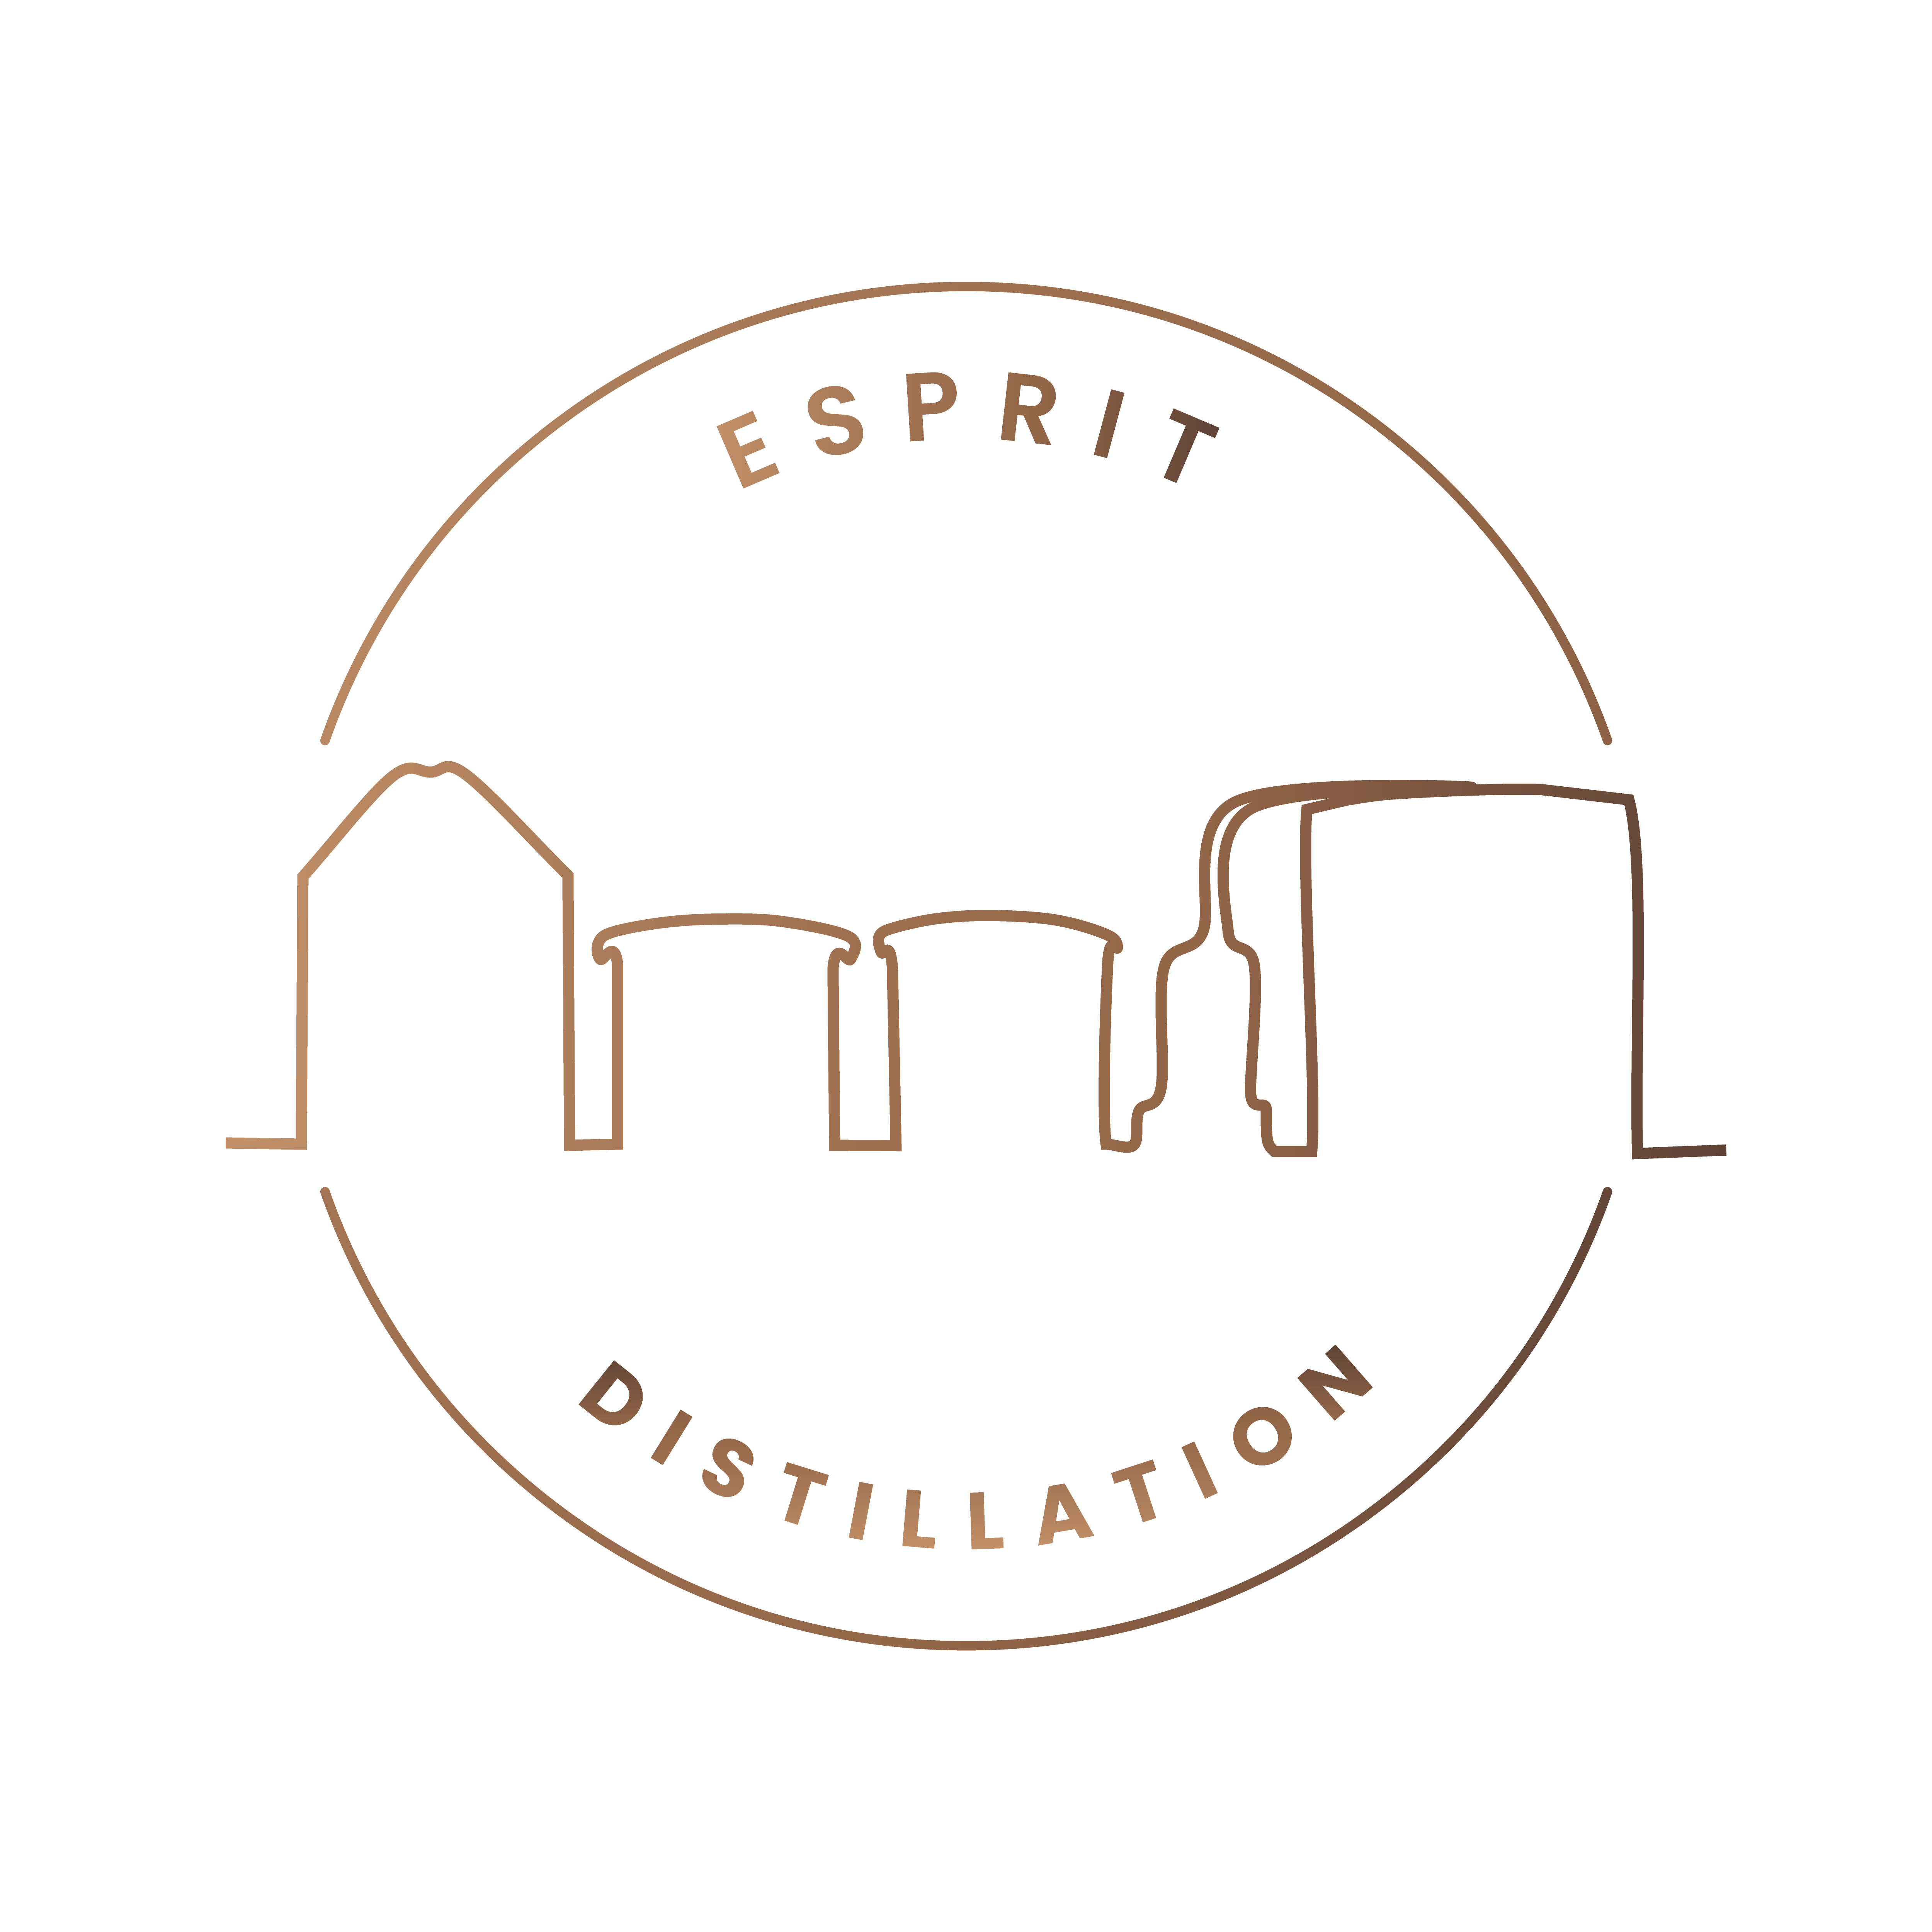 Esprit Distillation logo HD Spiritueux